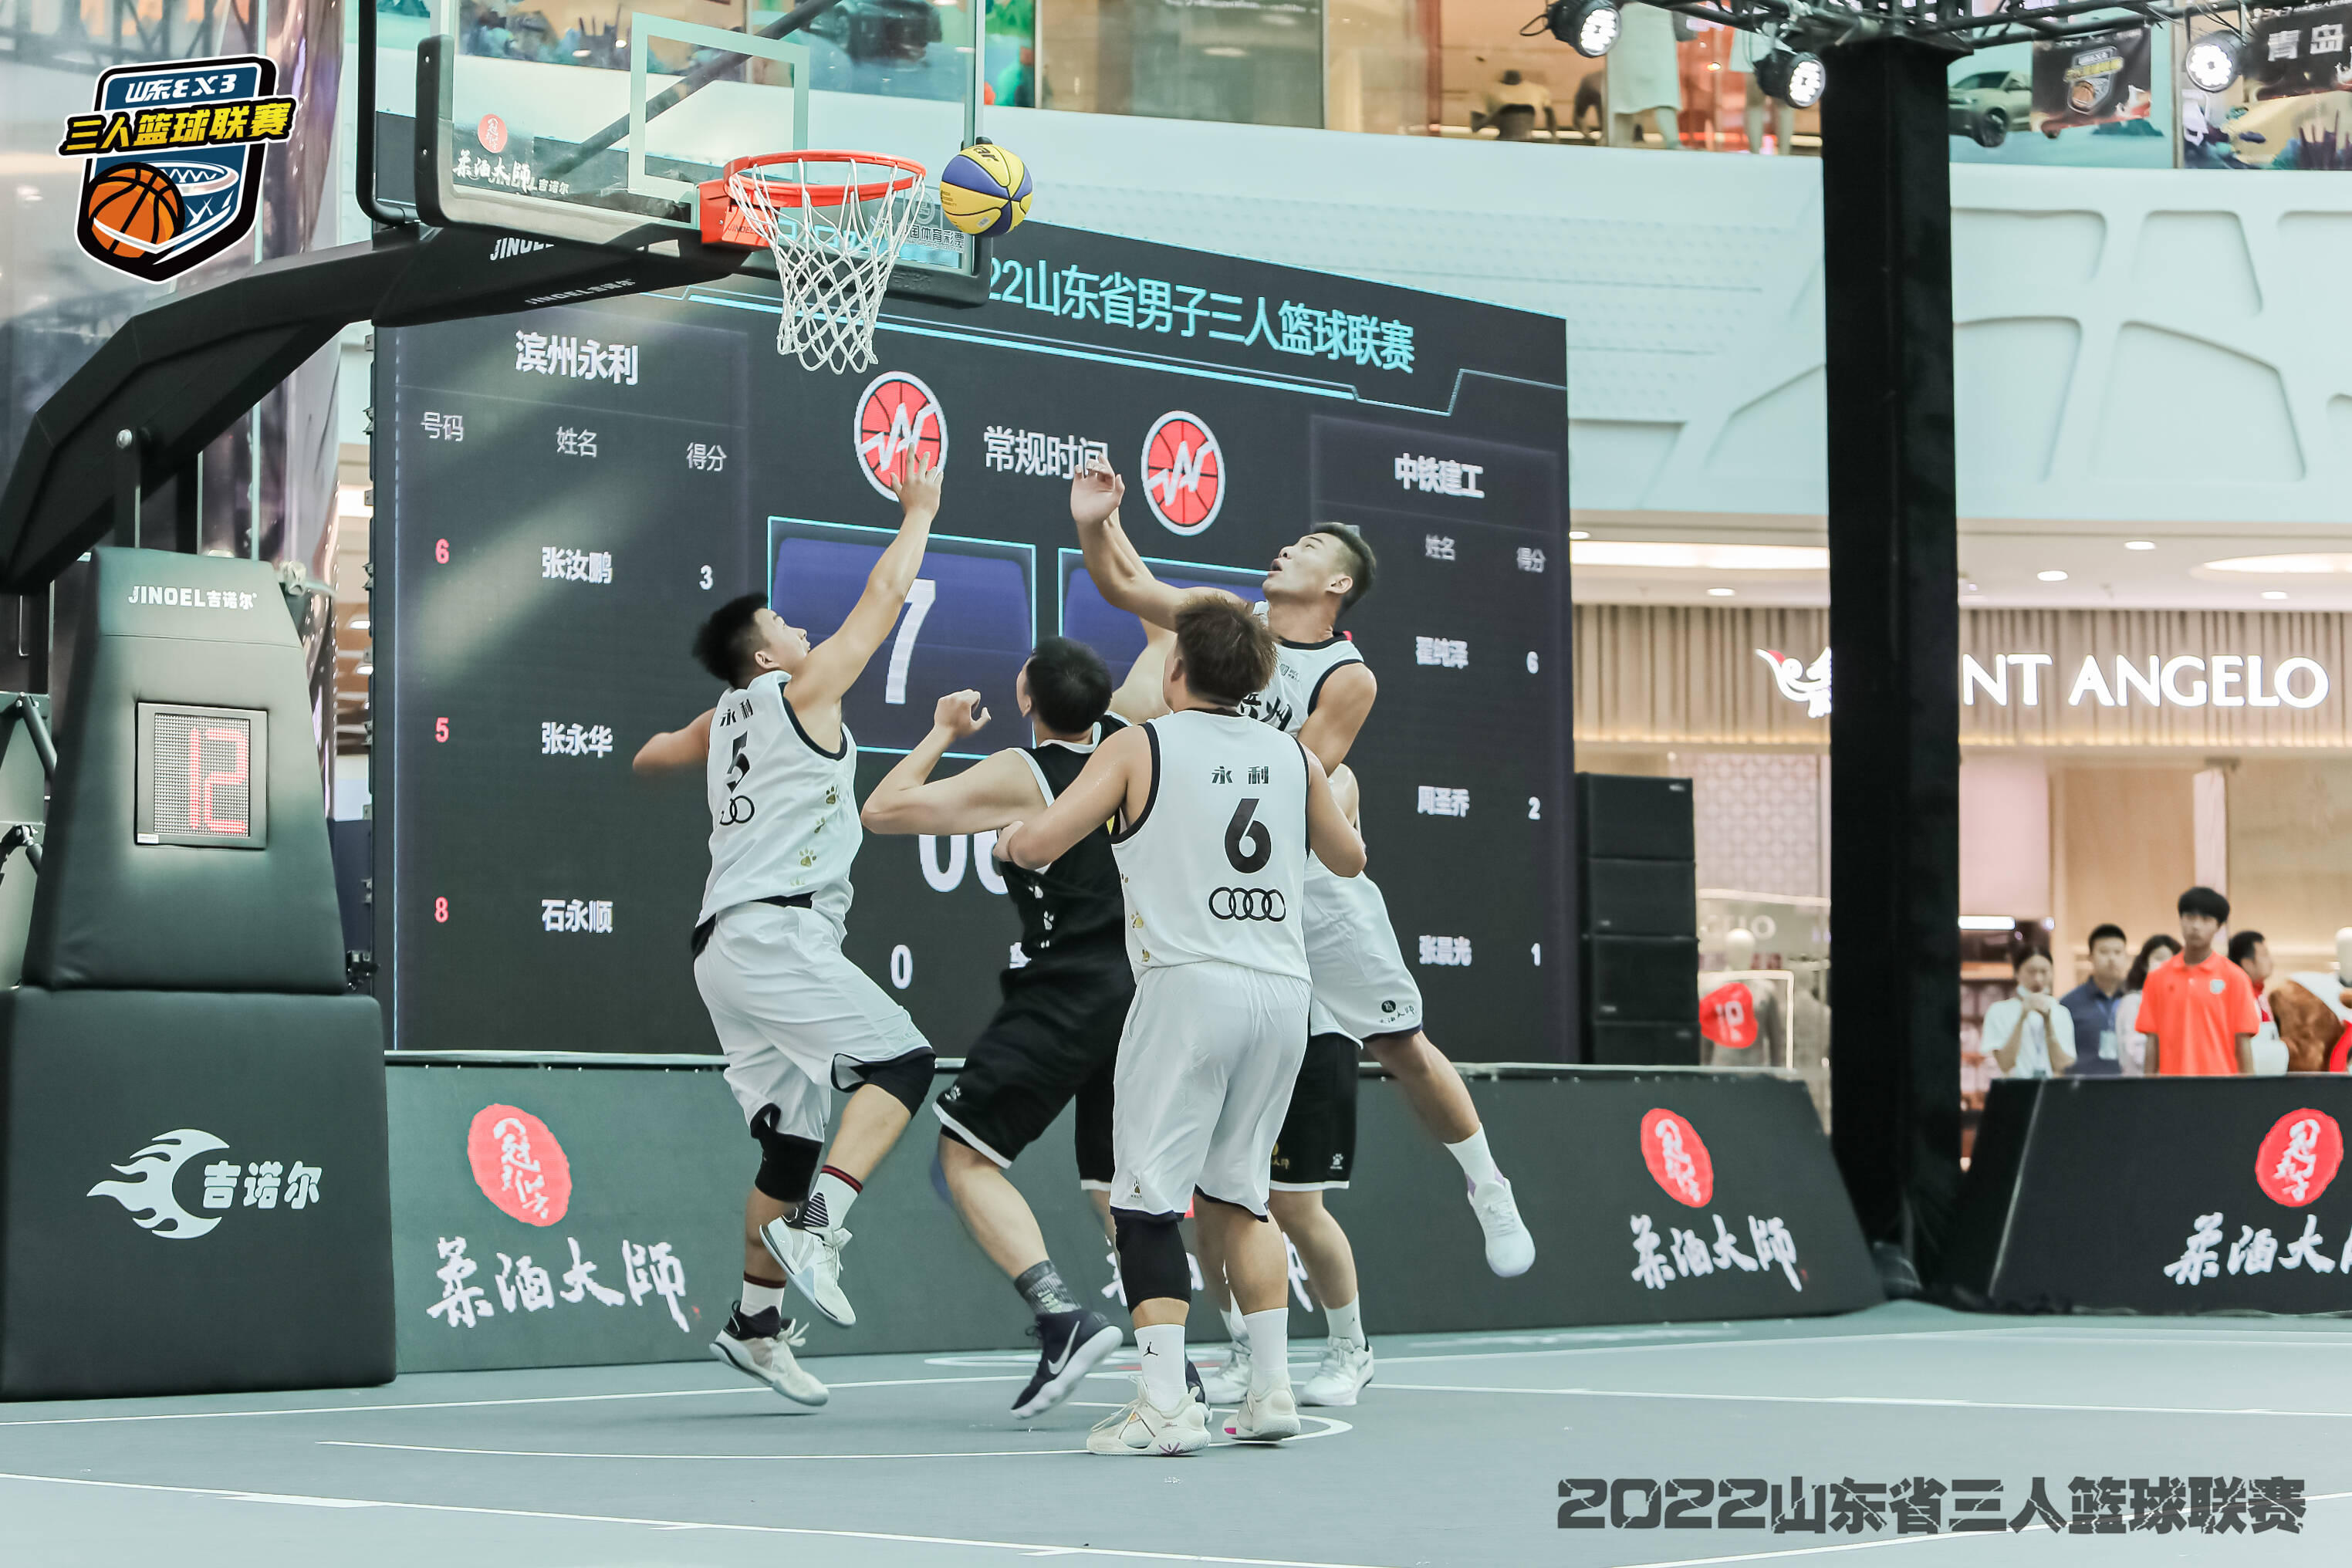 山东省男子三人篮球联赛激战正酣 决赛阶段山东电视体育频道全程直播